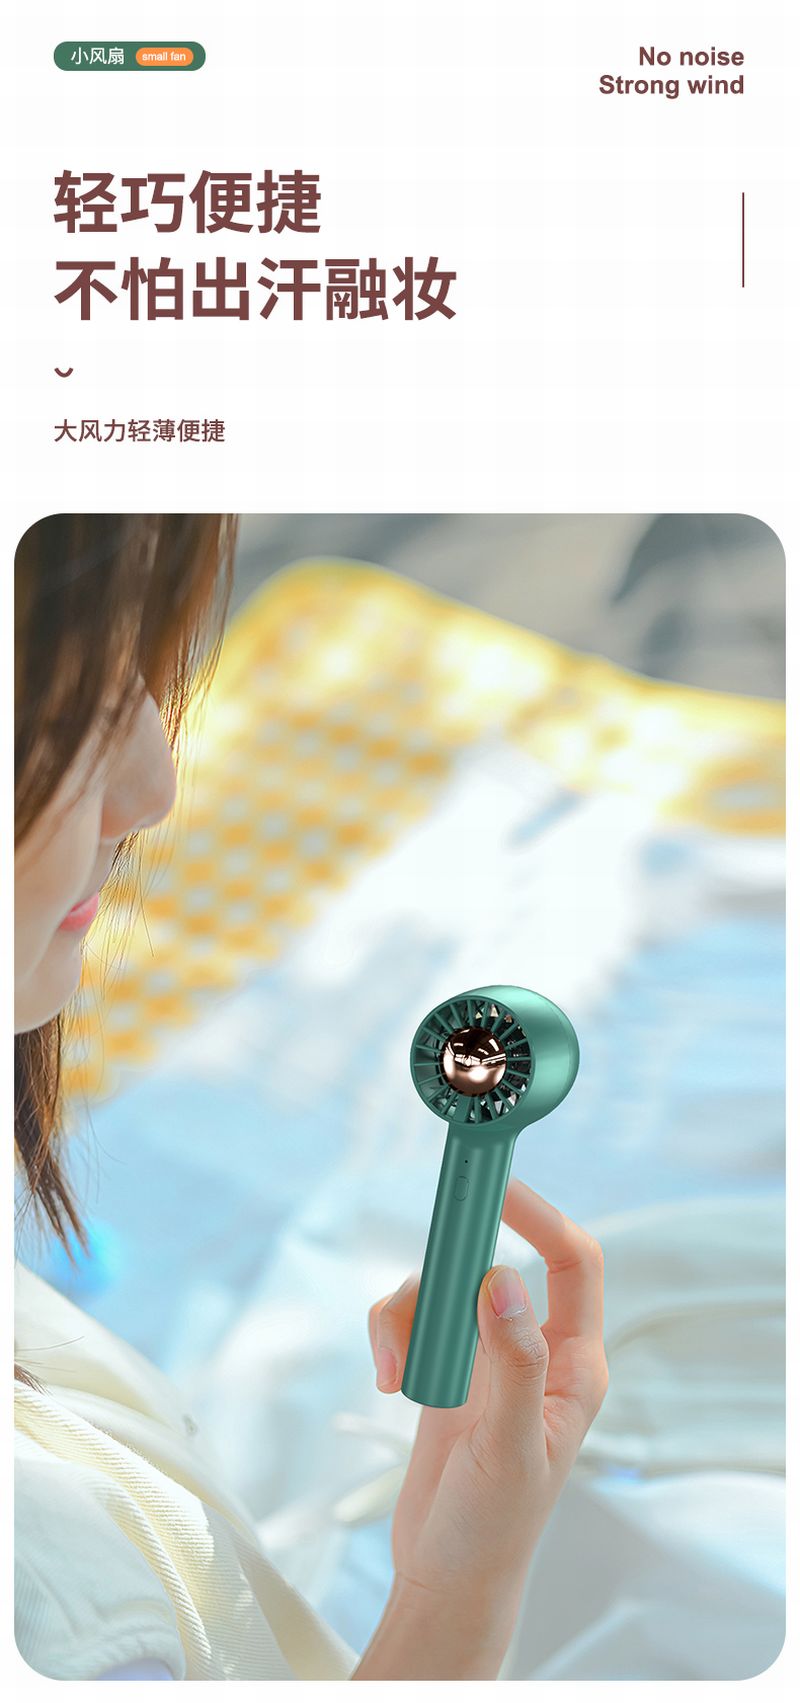 Turbine mini fan Mini handheld small fan